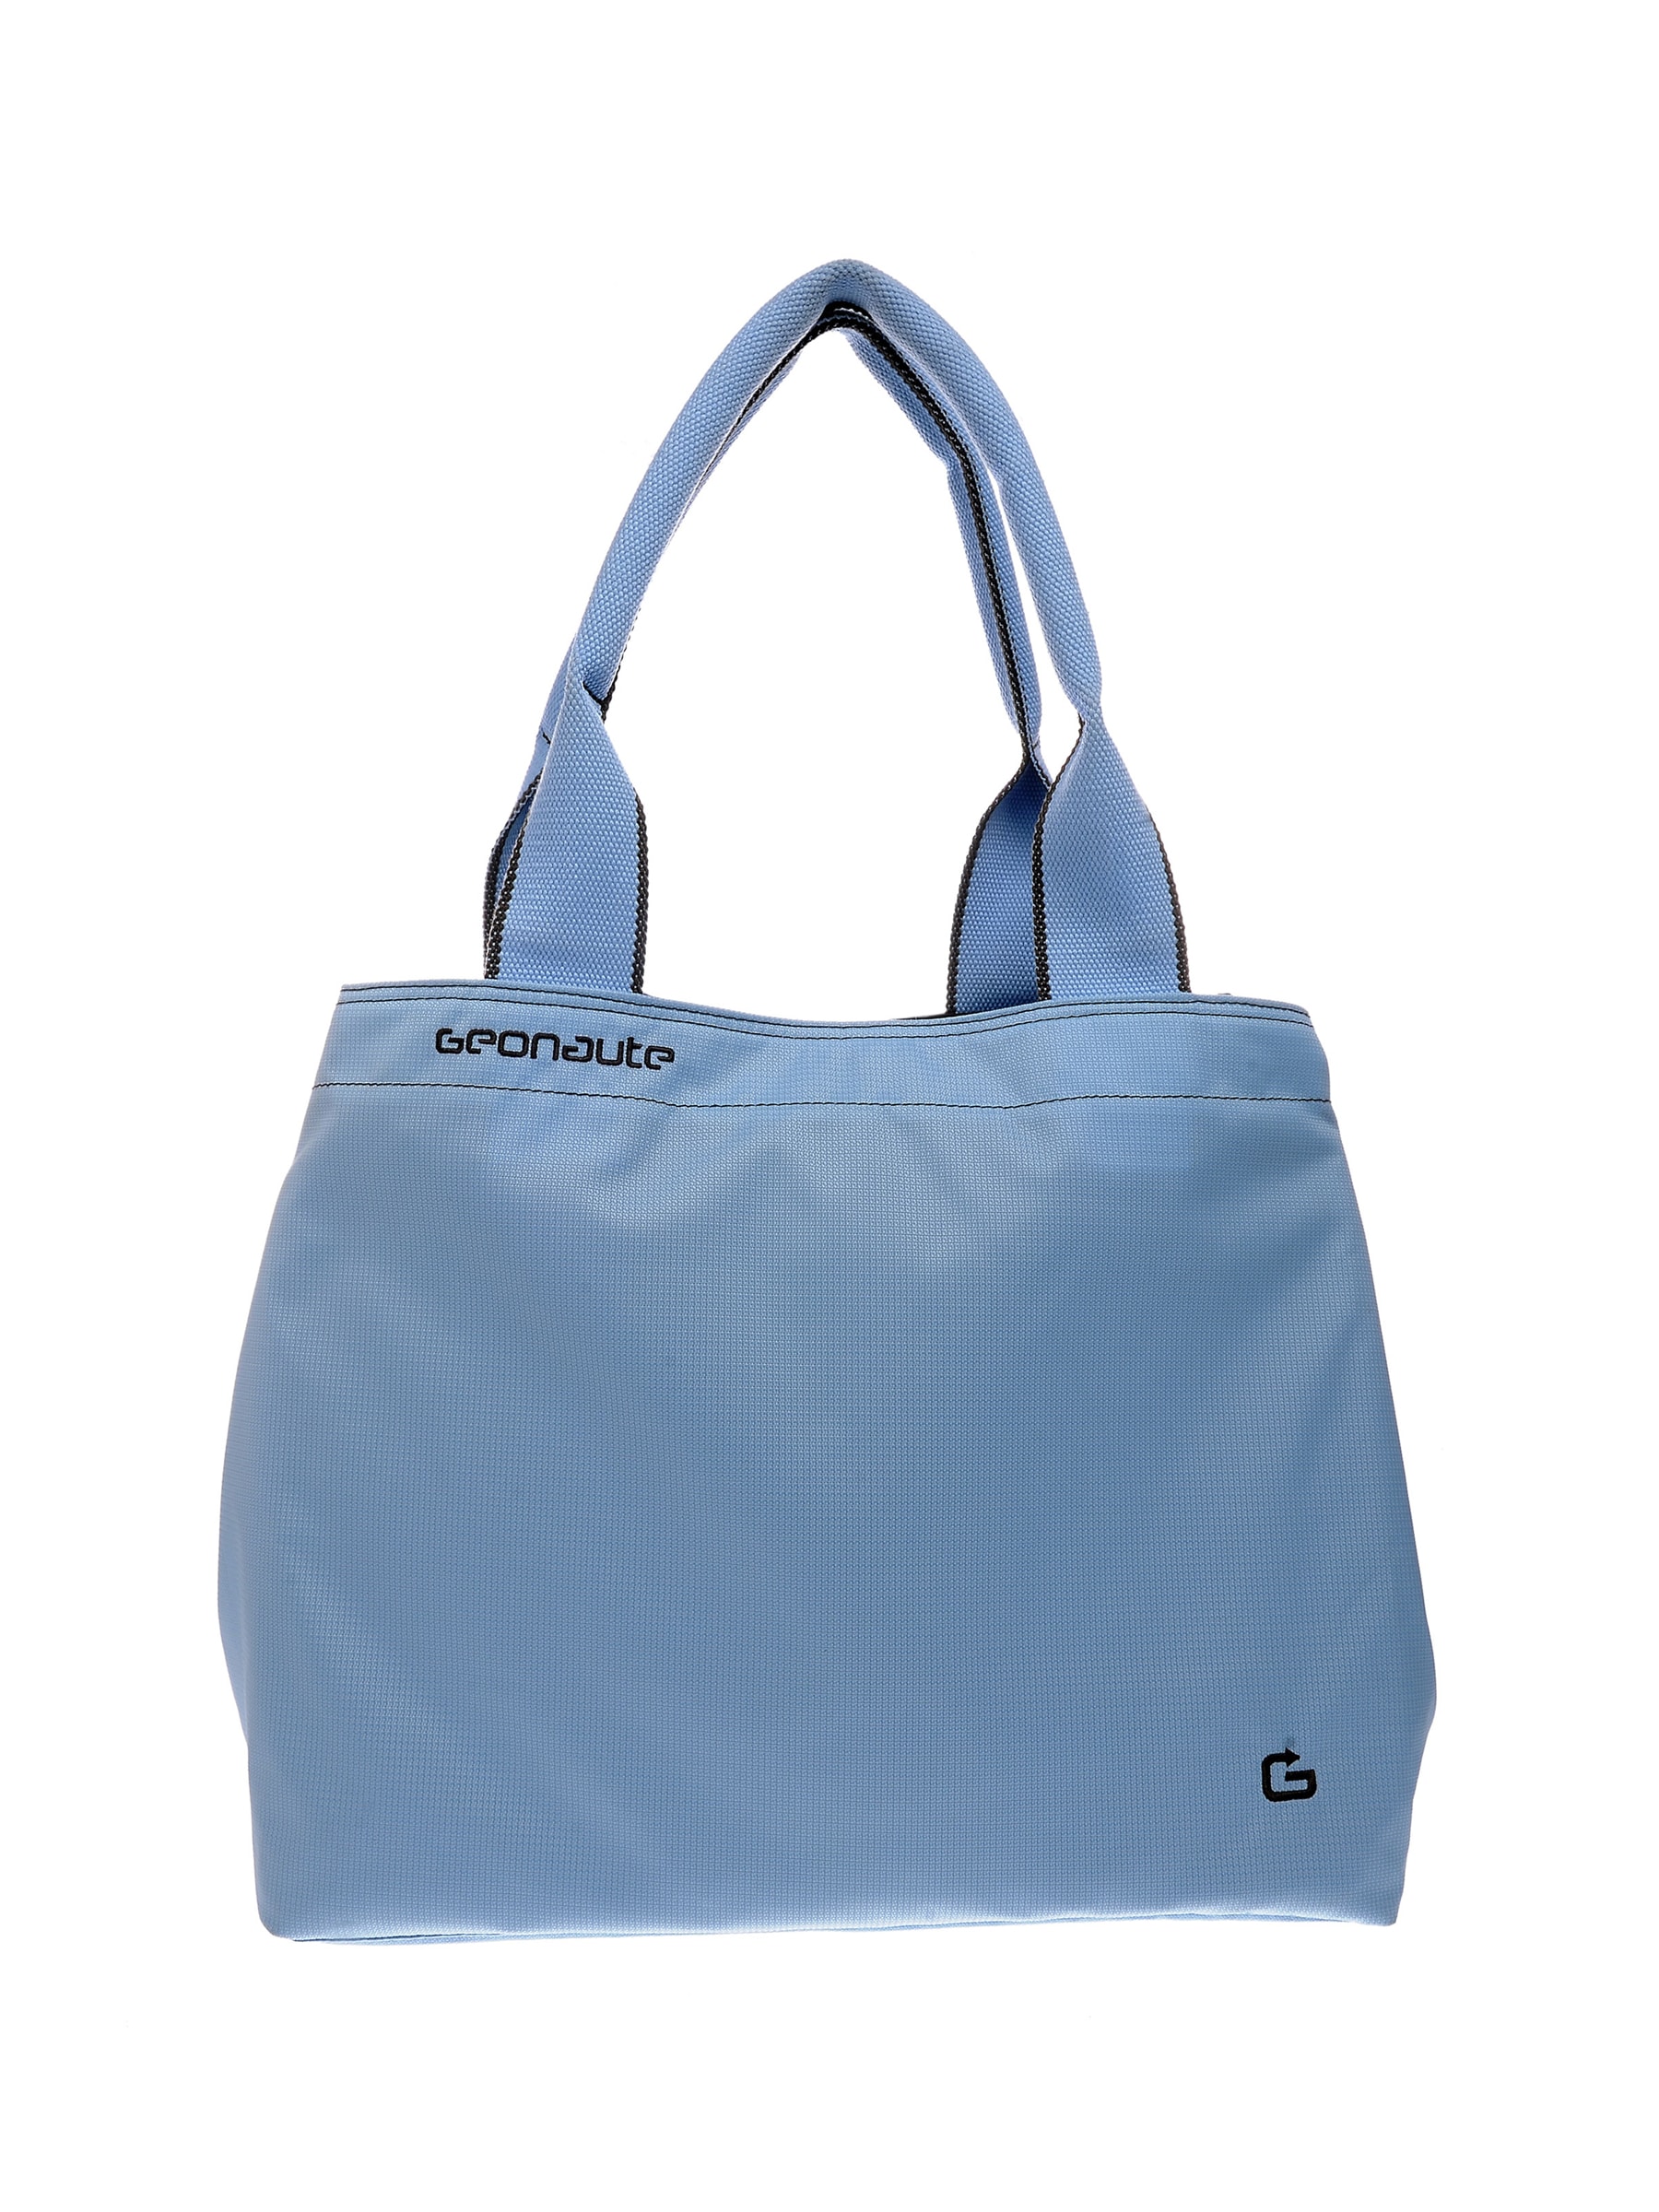 Geonaute Women Large Outdoor Bag Bag